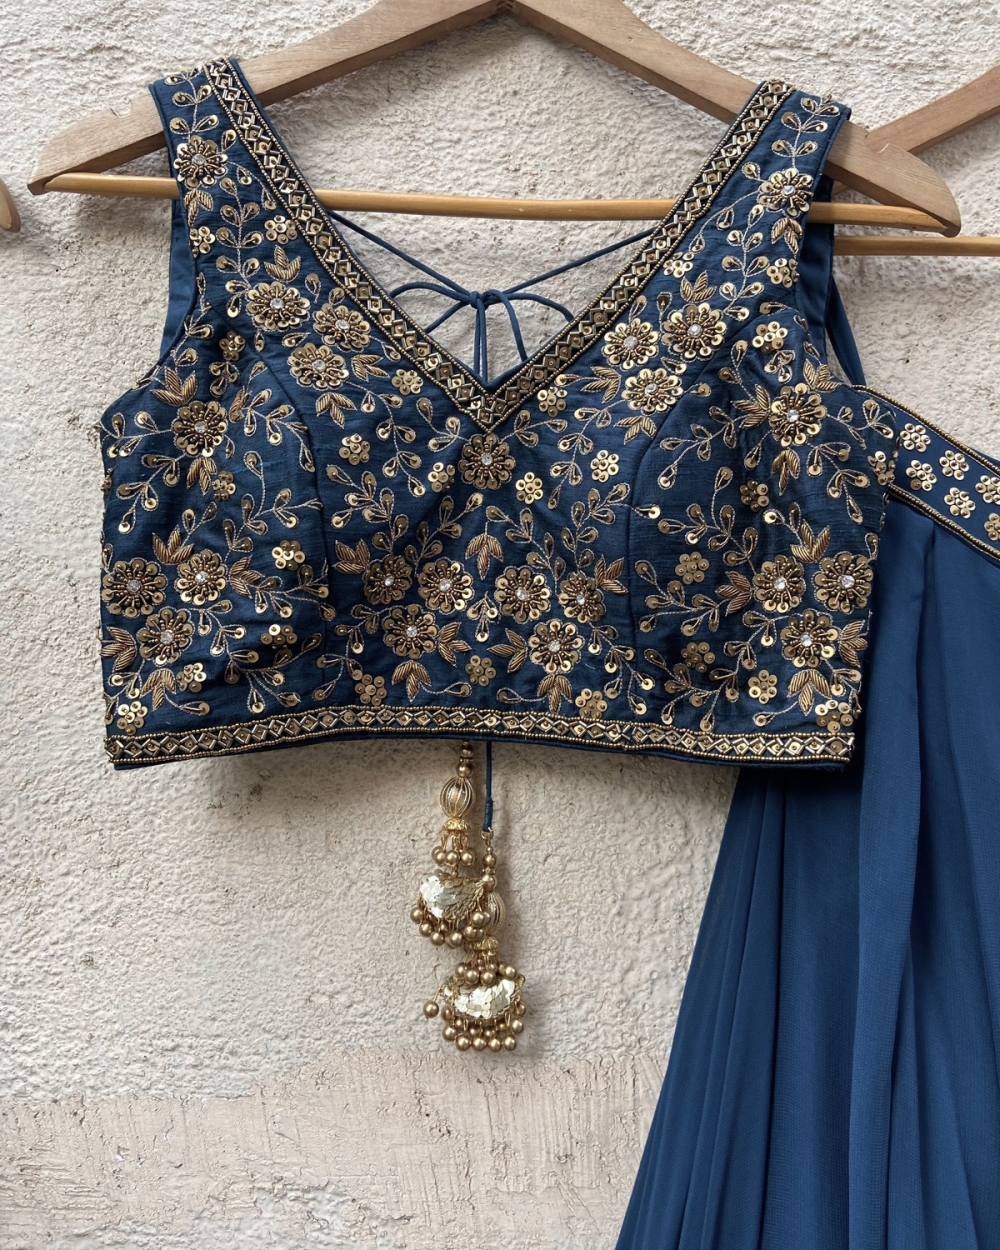 Teal Georgette Pleated Lehenga Set with Embroidered Blouse - Fashion Brand & Designer Priti Sahni 3